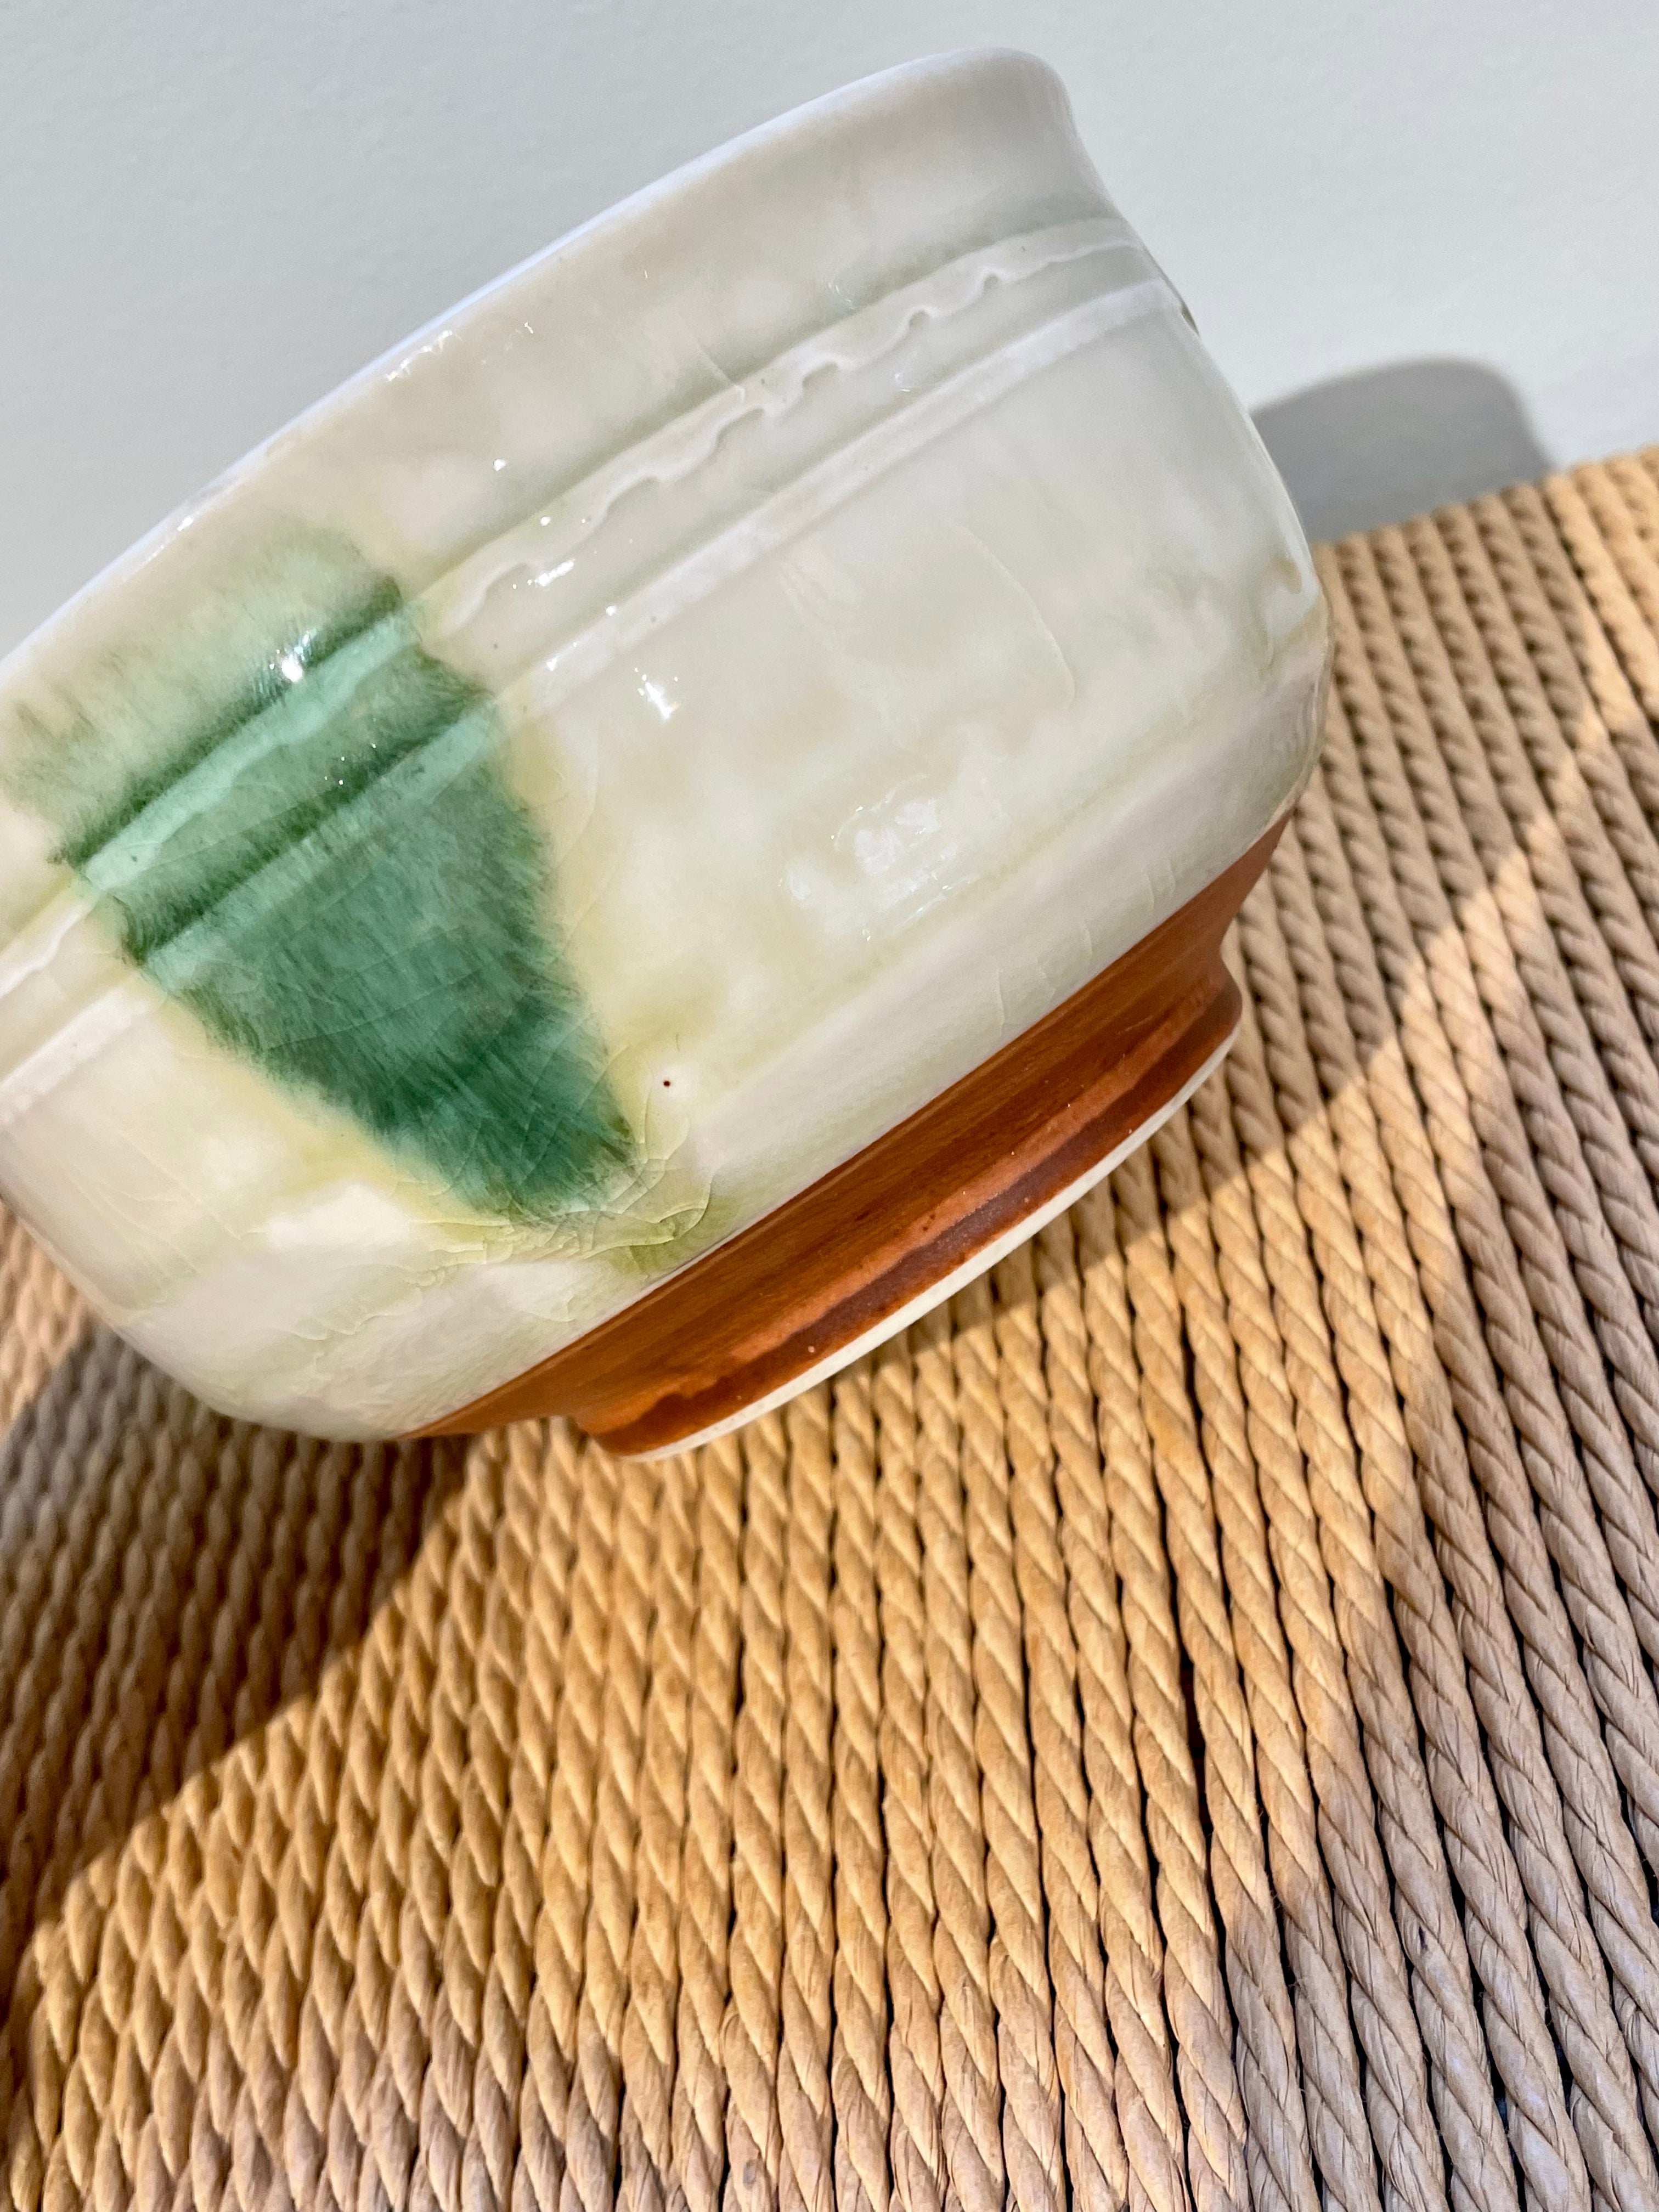 Japansk skål med grønt mønster